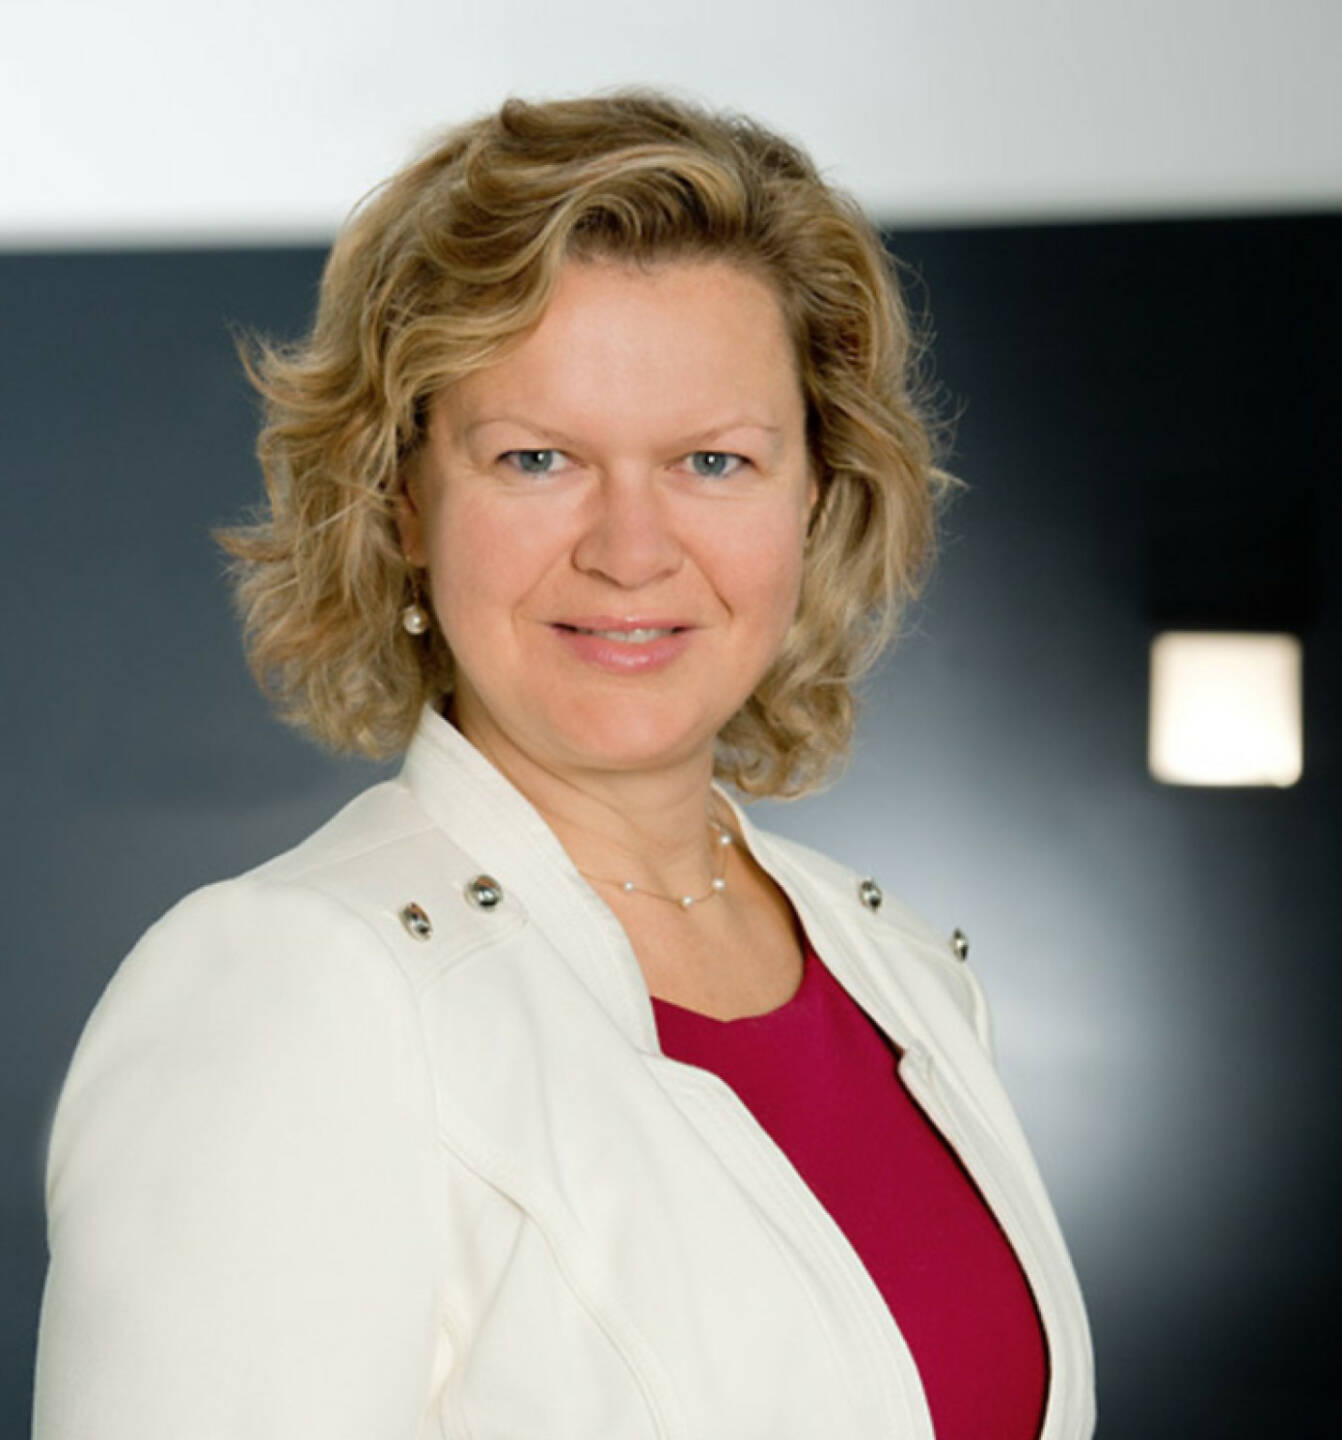 Elena Skvortsova ist neues Vorstandsmitglied bei der OMV. Sie ist verantwortlich für den Bereich Downstream Marketing & Trading der OMV Aktiengesellschaft Credit: Linde